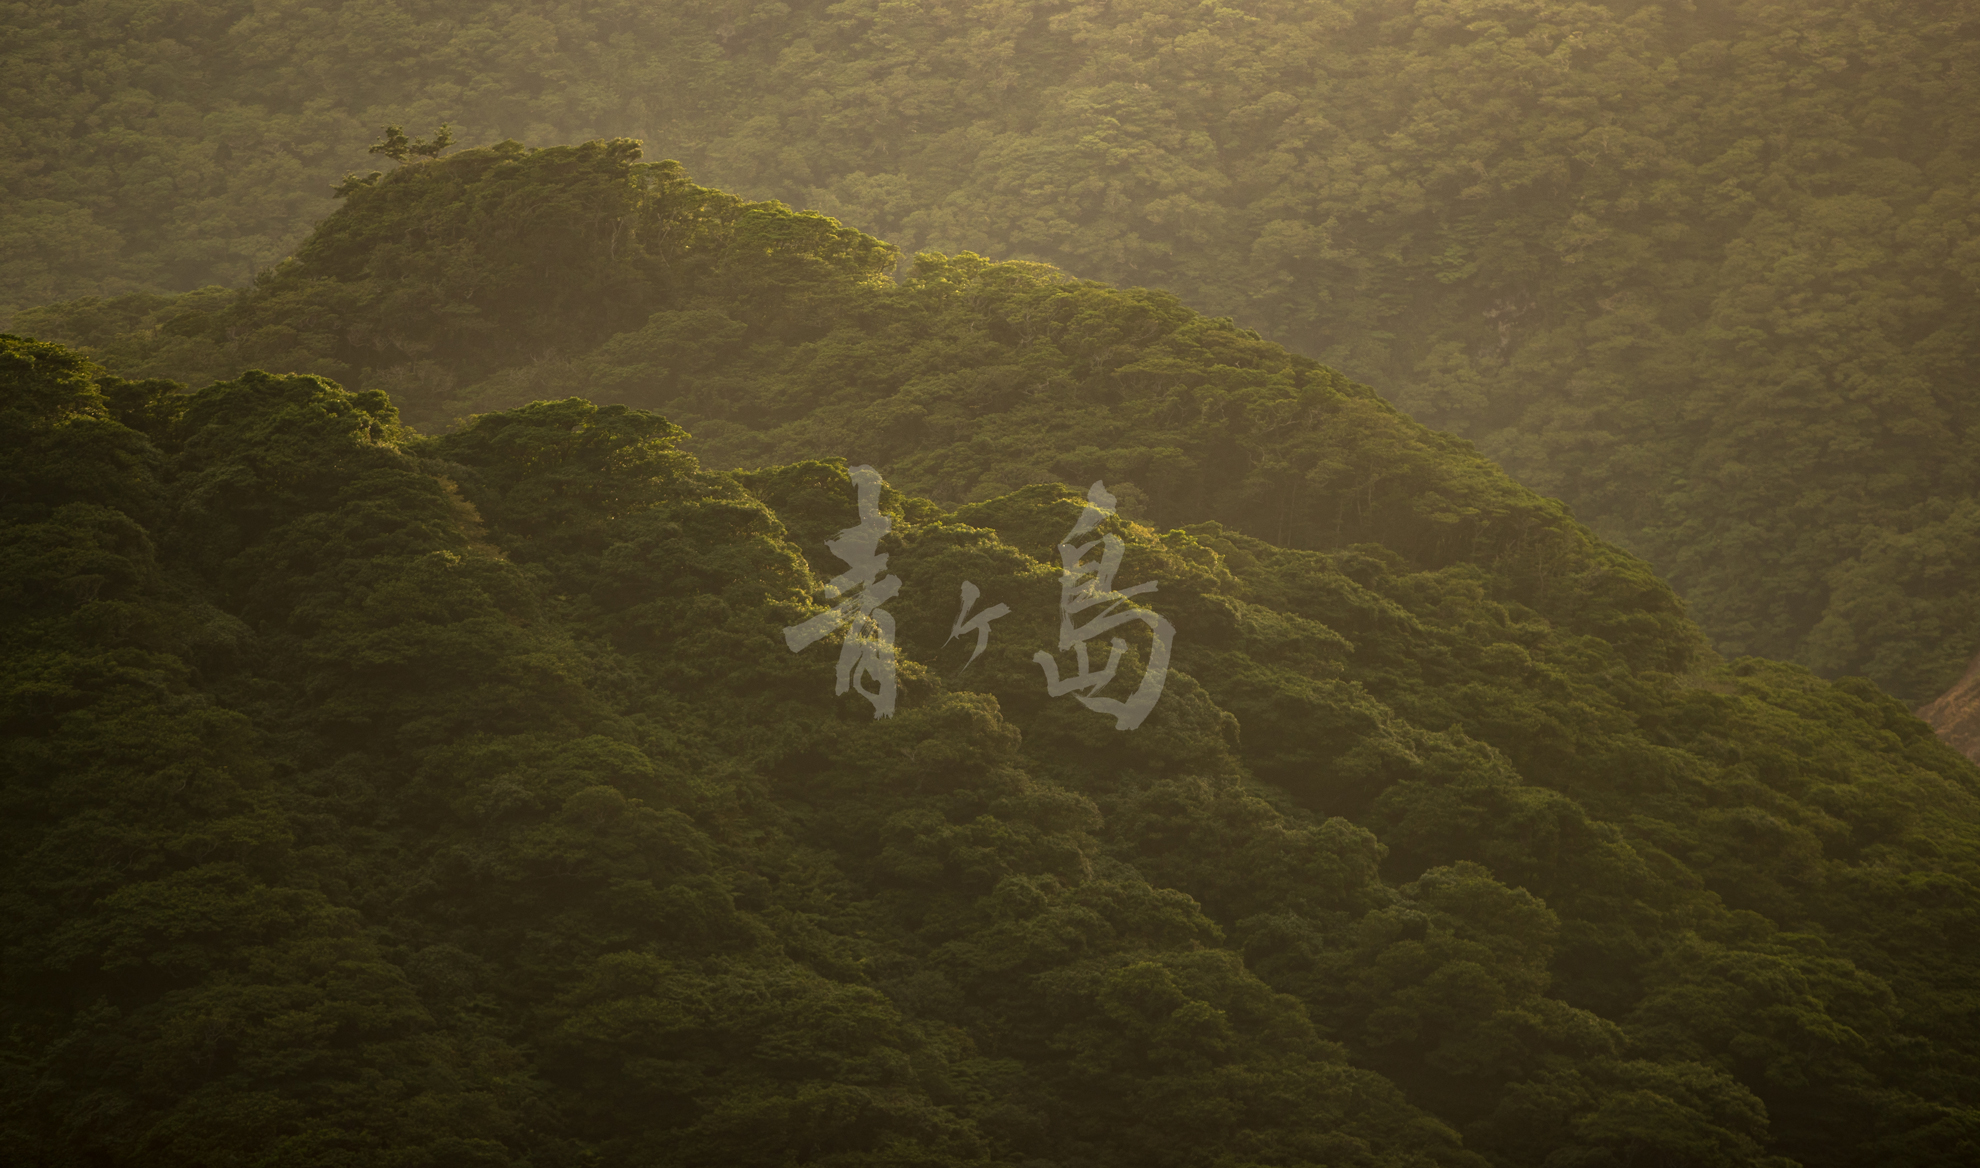 川村剛弘写真展『青ヶ島 神の造形』 2018年5月1日（火）〜31日（木）